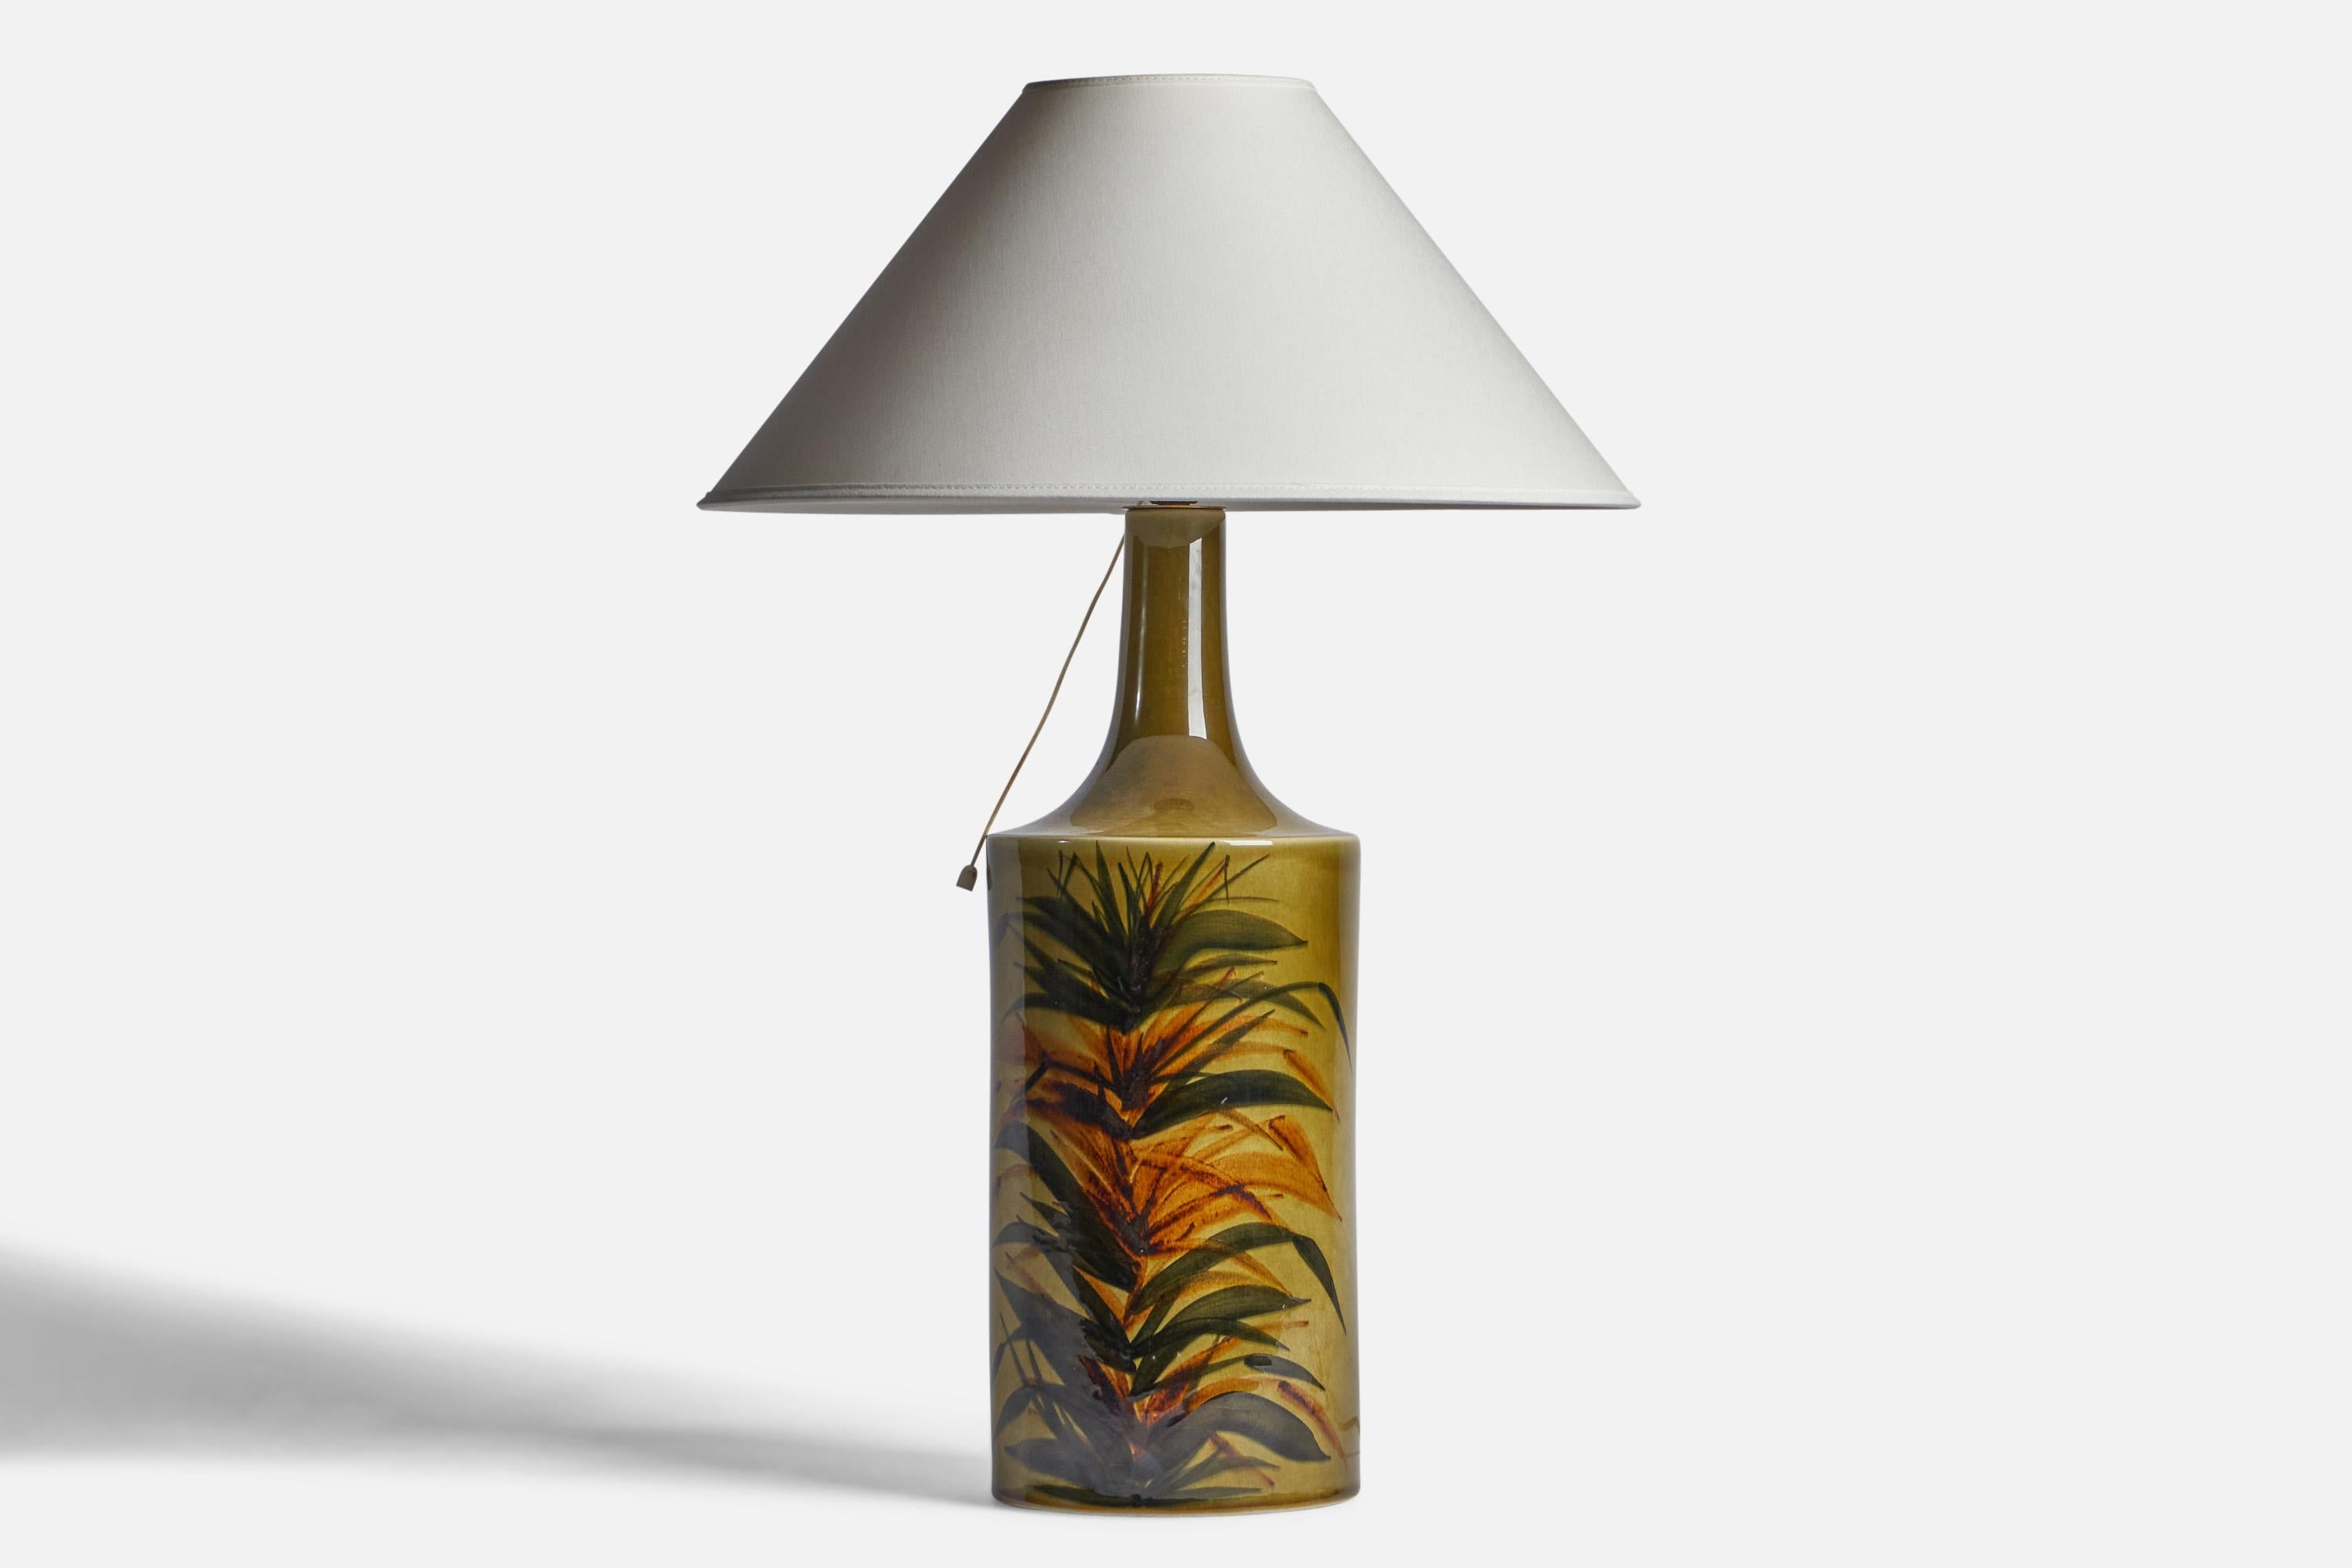 Lampe de table en grès émaillé vert, peinte à la main, conçue par Gunvor Olin-Grönquist et produite par Arabia, Finlande, c.C. 1950.

Dimensions de la lampe (pouces) : 19.5